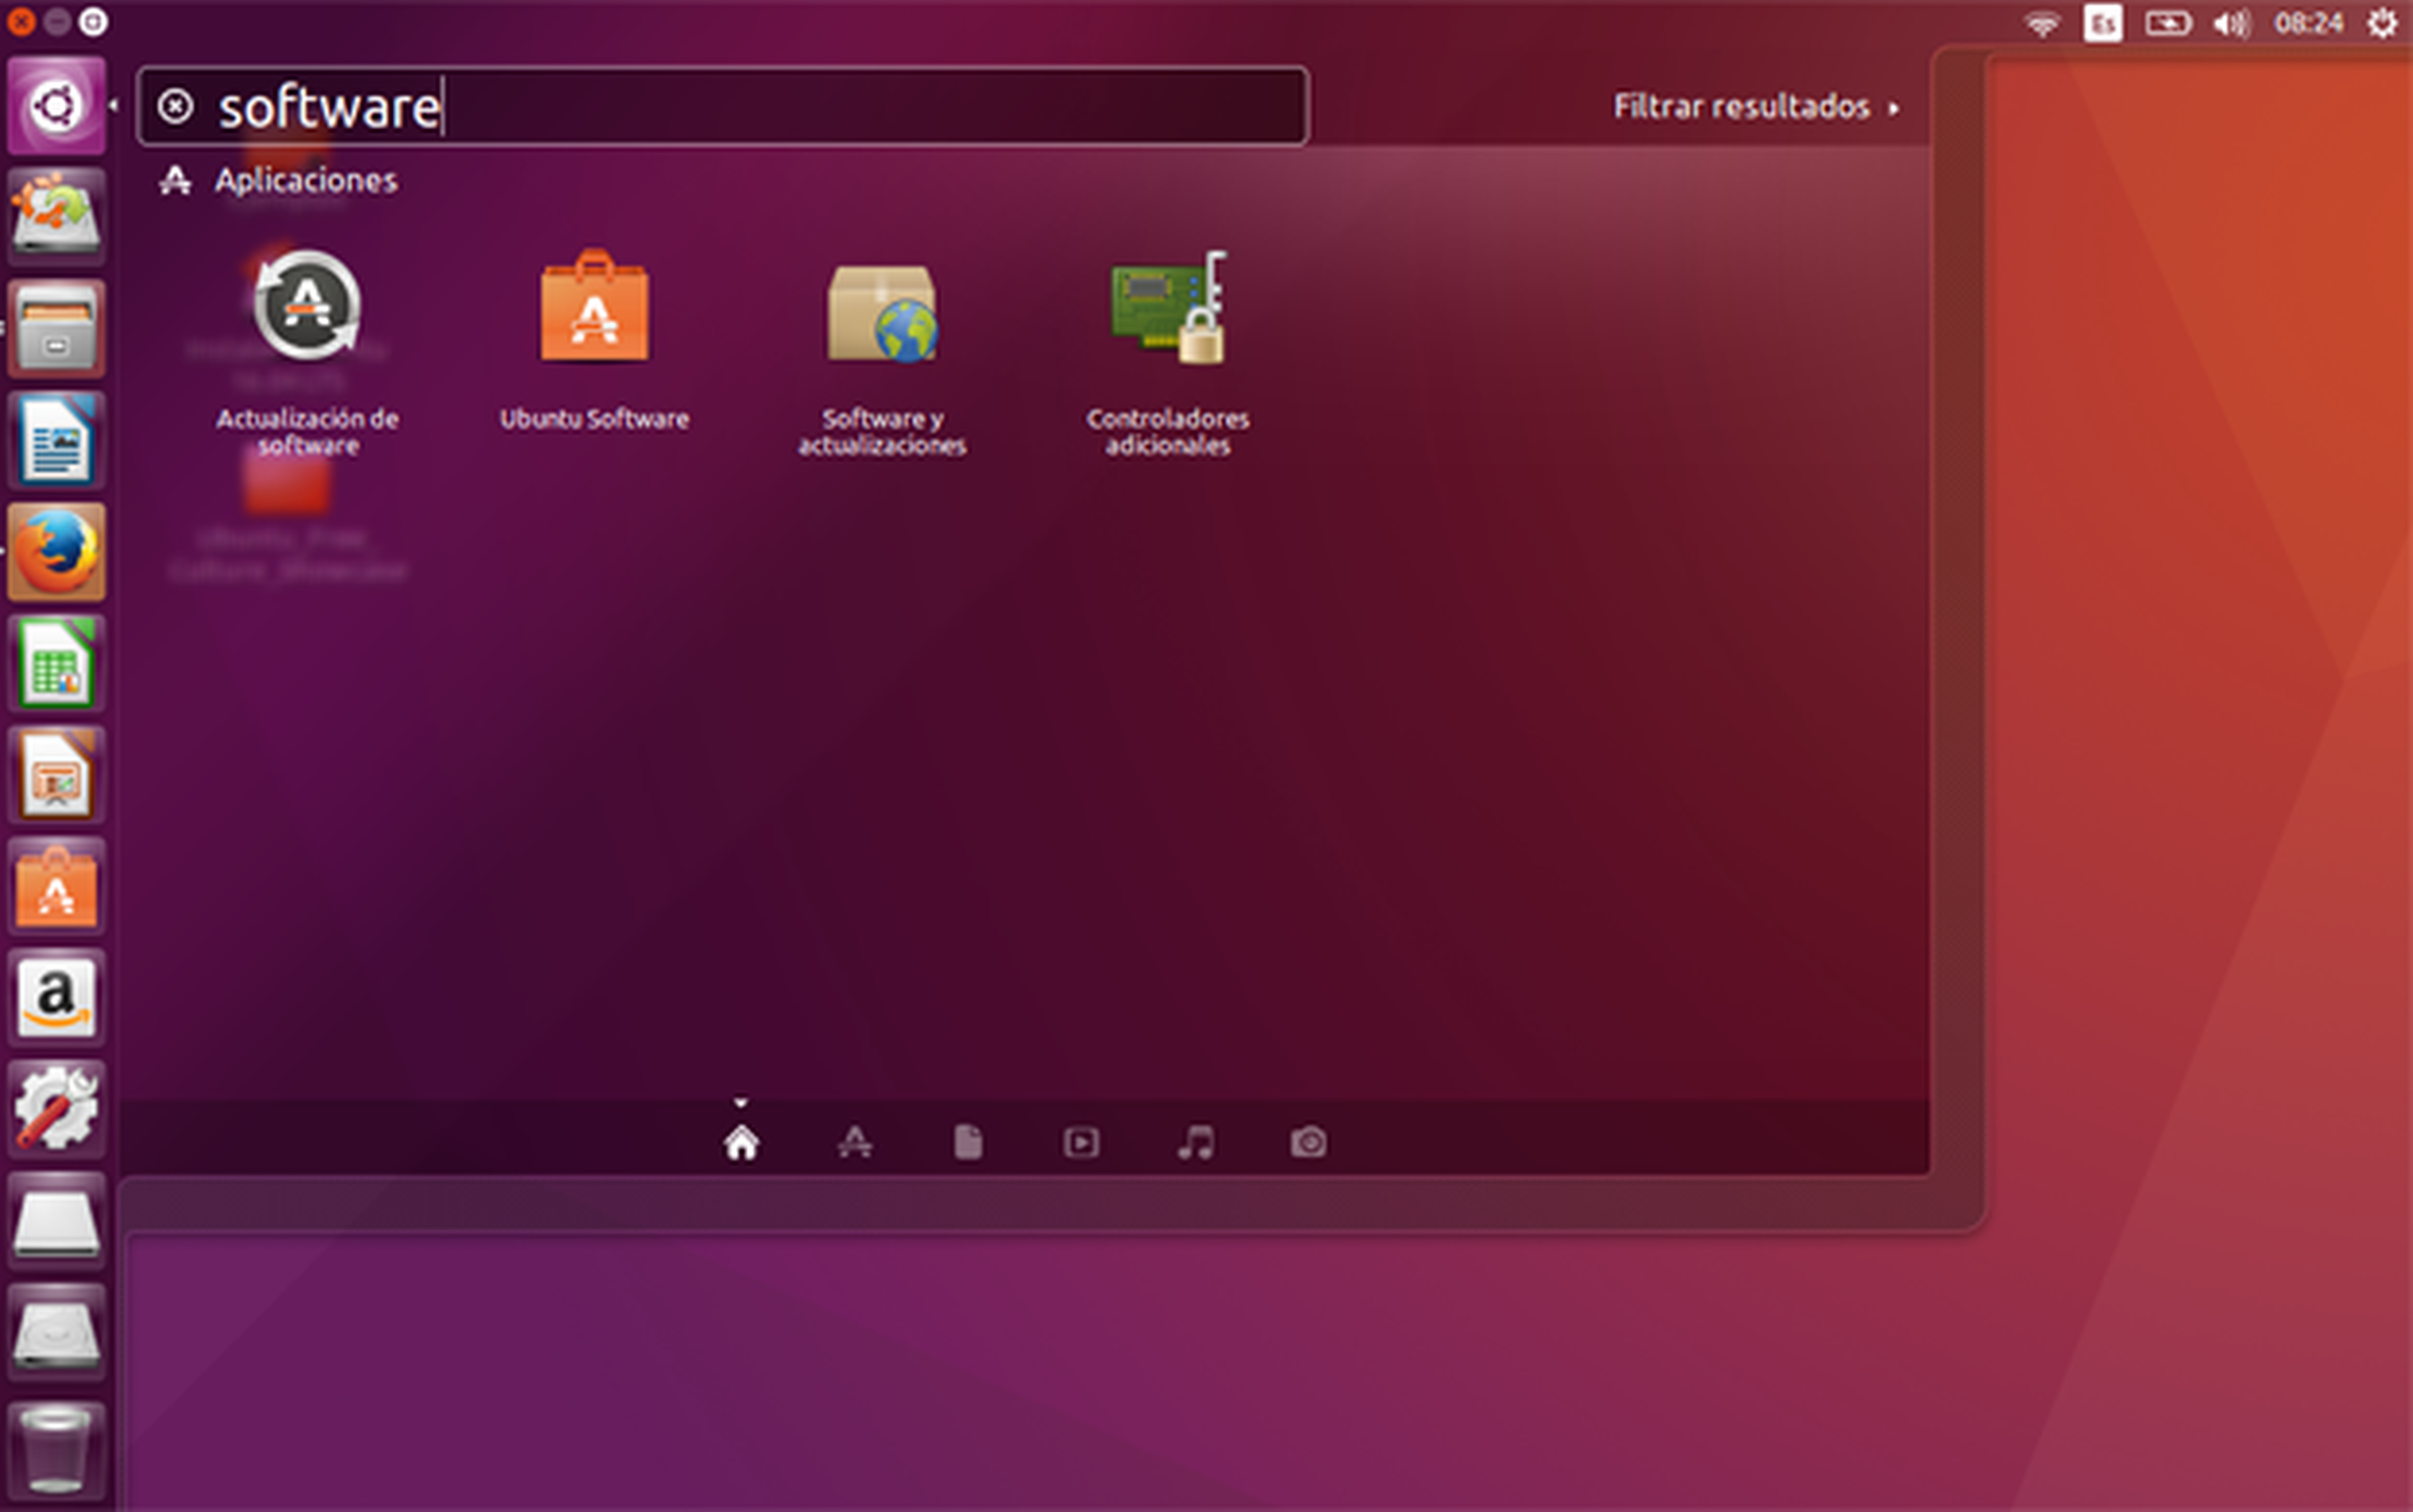 Cómo actualizar Ubuntu a su última versión